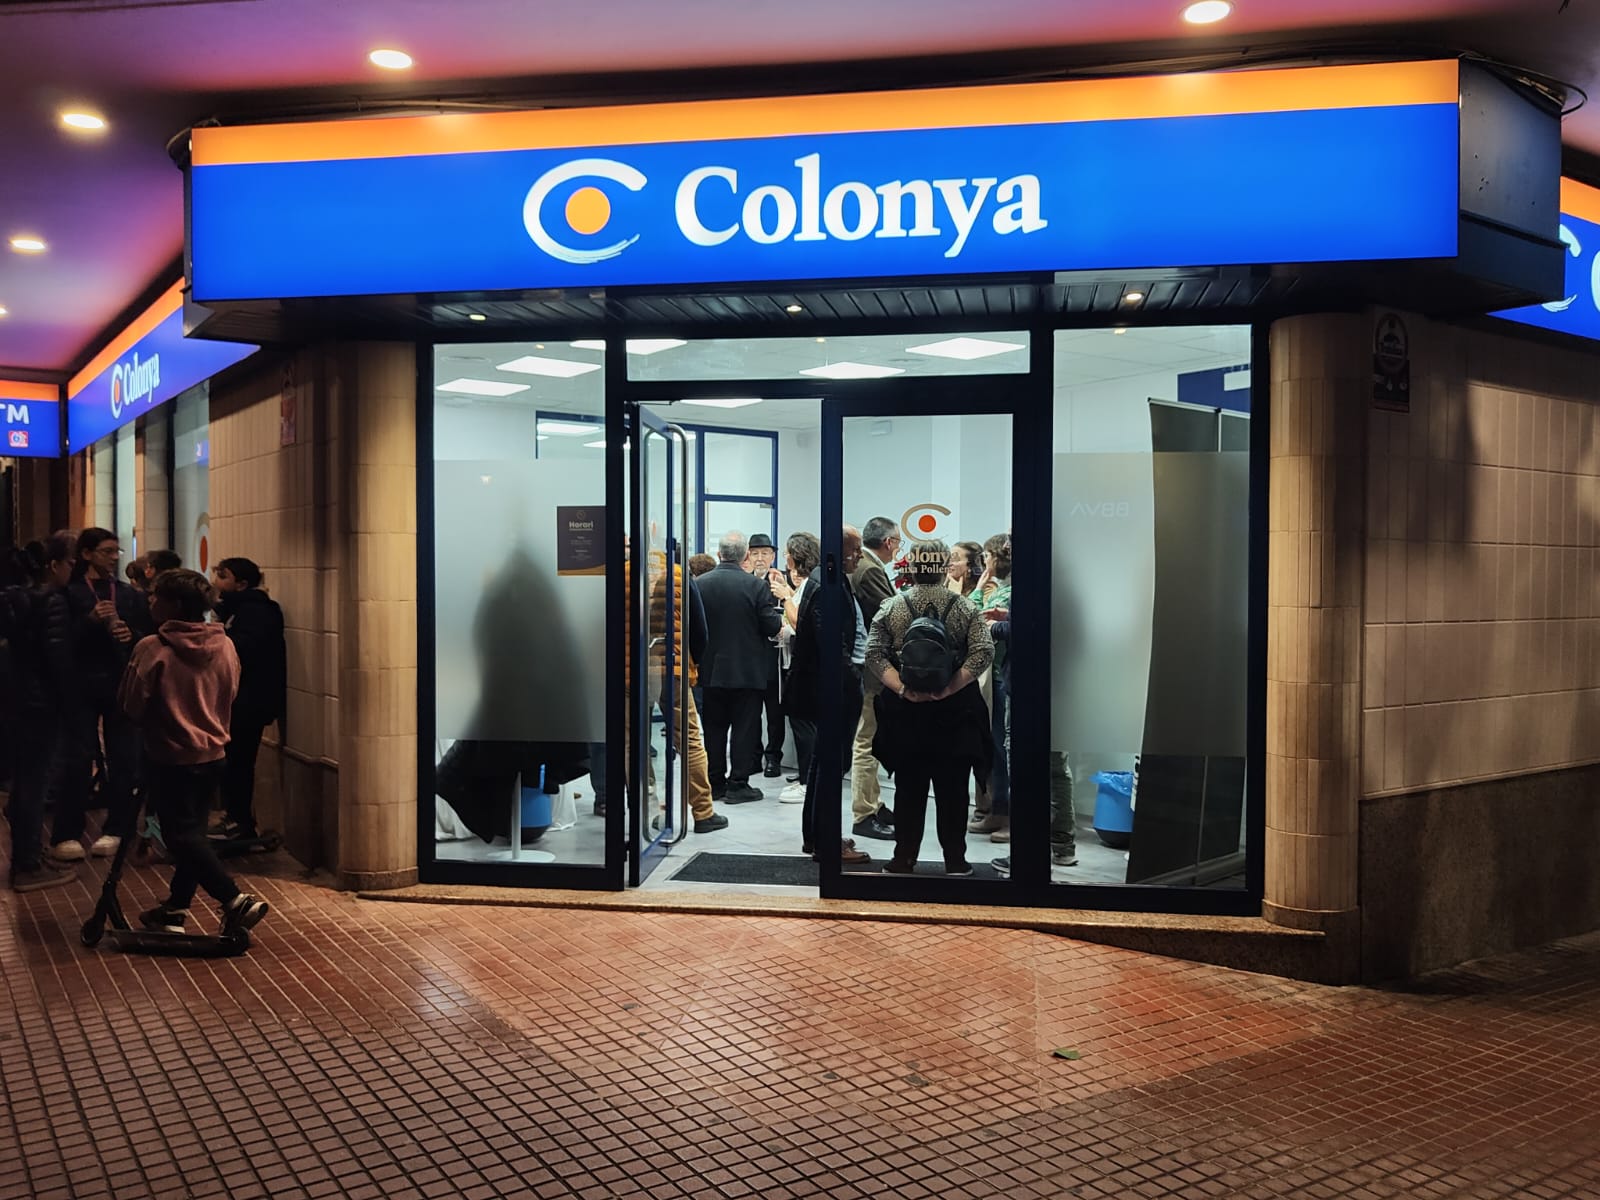 Caixa Colonya obri oficina a Ferreries i compleix una demanda de la gent gran del poble